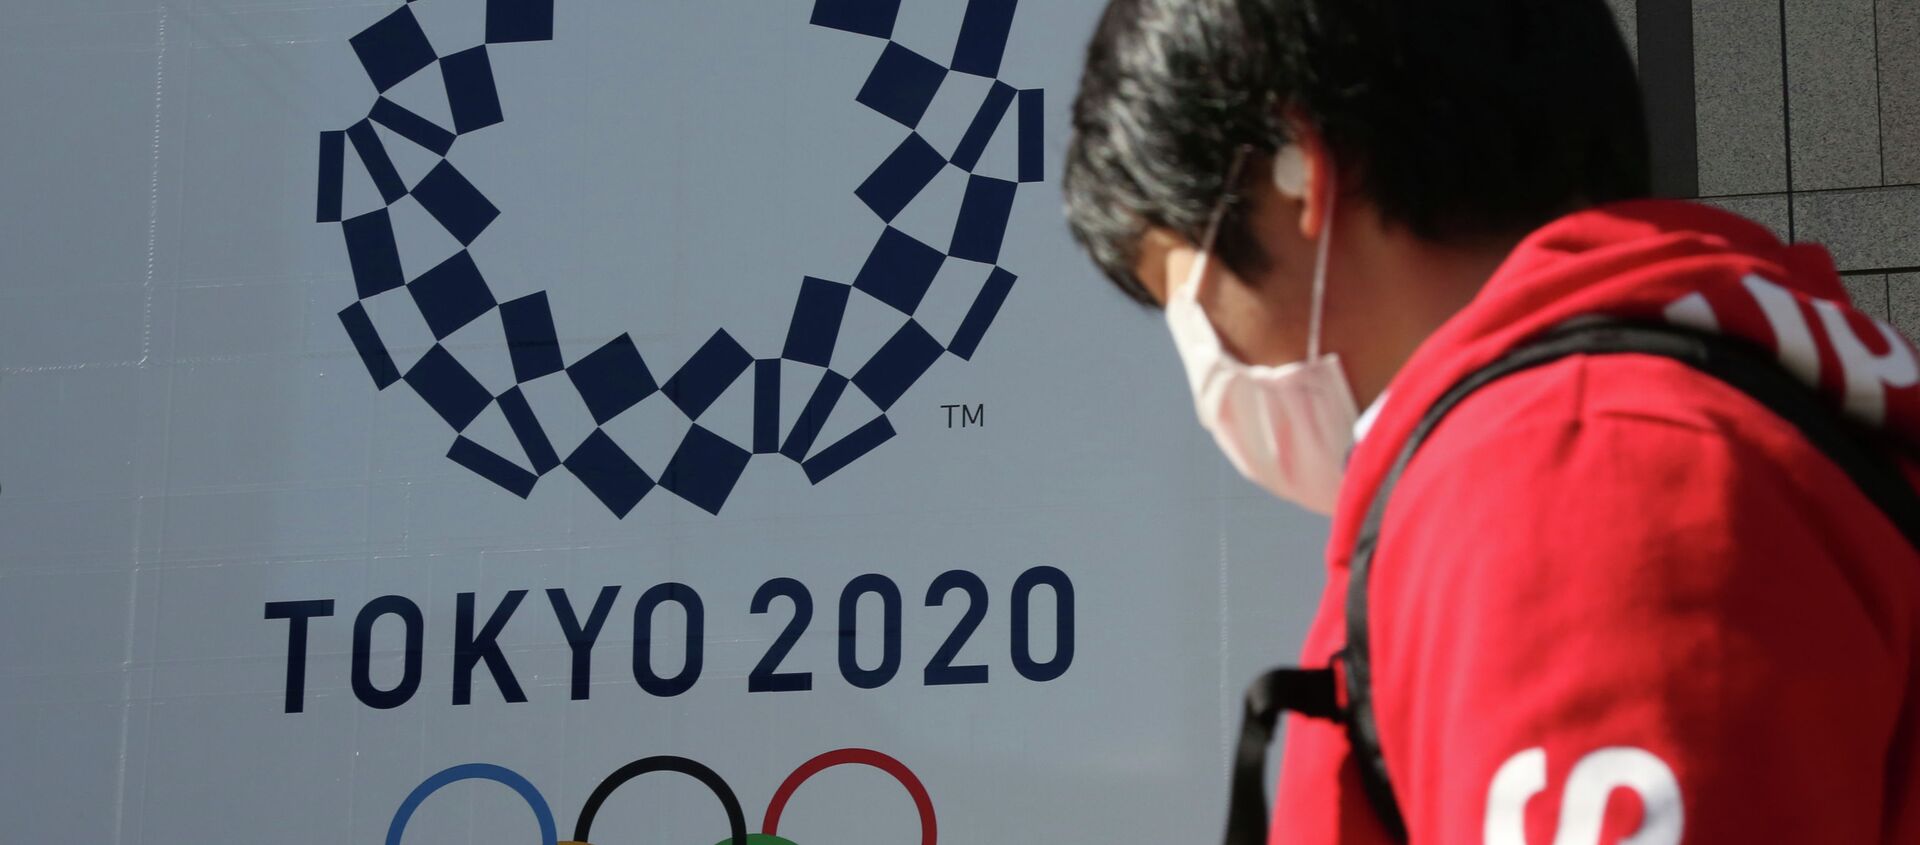 Человек в маске проходит мимо плаката с символикой Олимпиады в Токио  - Sputnik Казахстан, 1920, 09.03.2021